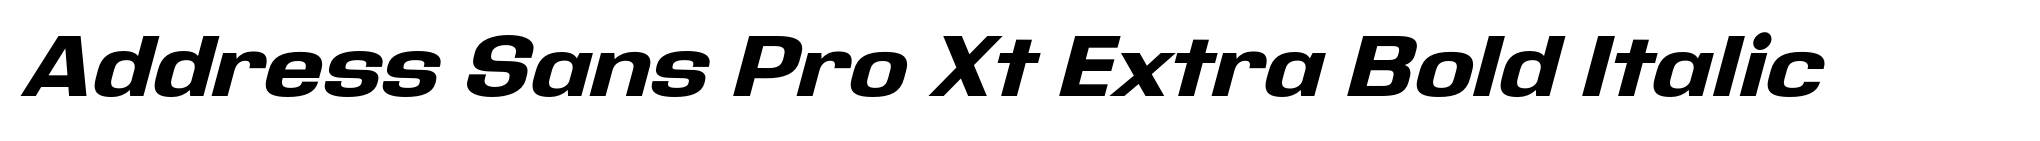 Address Sans Pro Xt Extra Bold Italic image